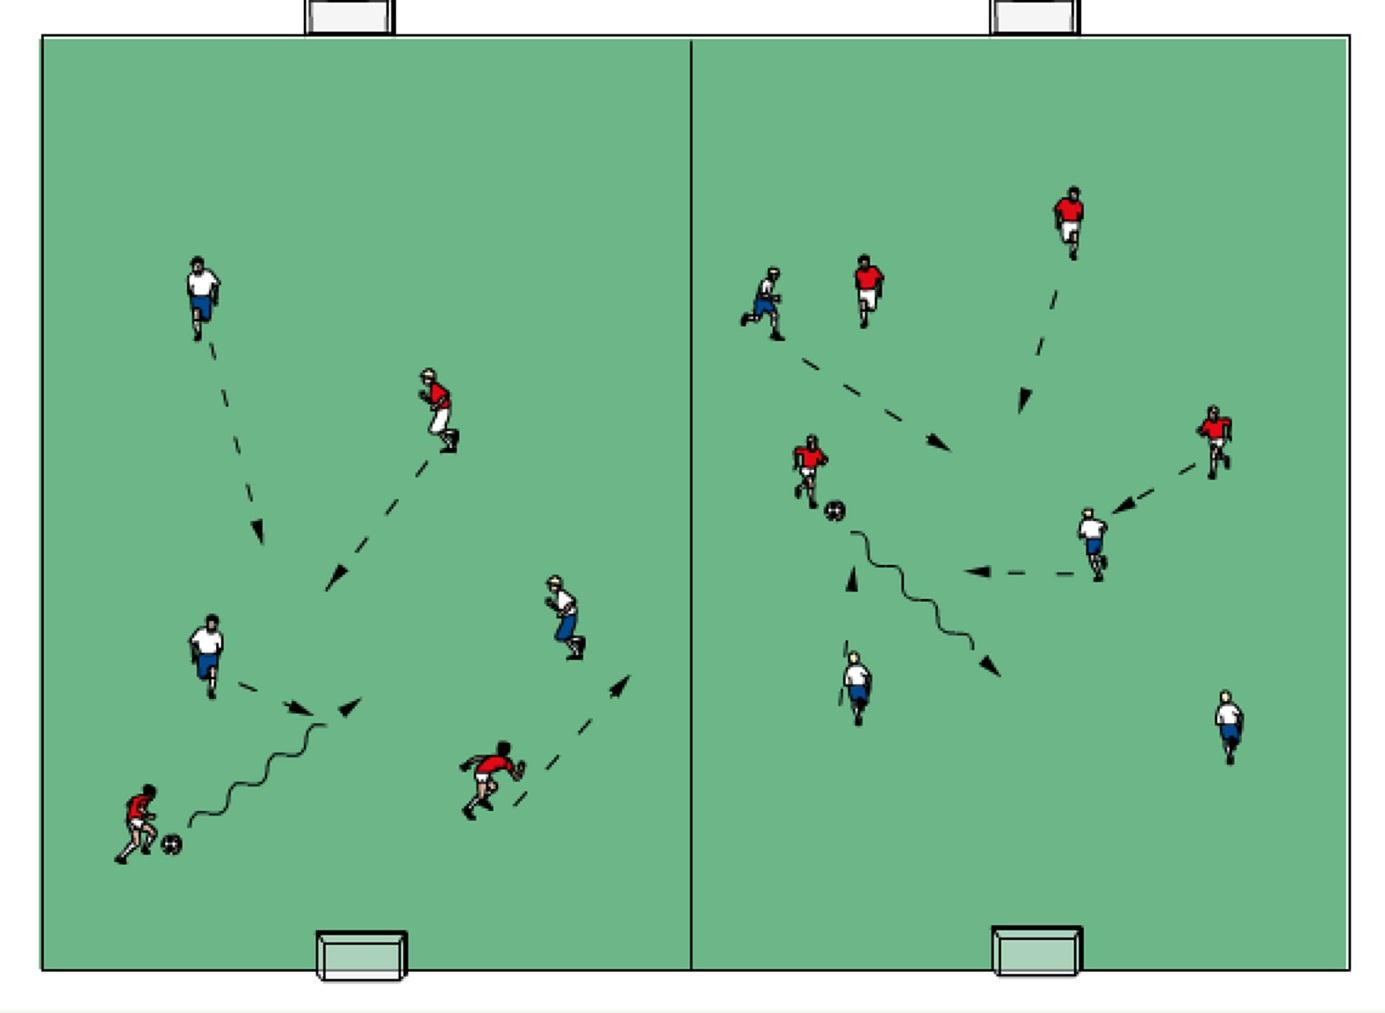 4) Mała gra 3x3 lub 4x4 8 min; 5) Zawodnicy podzieleni na pary, każda para posiada piłkę oraz bramkę utworzoną z pachołków, od